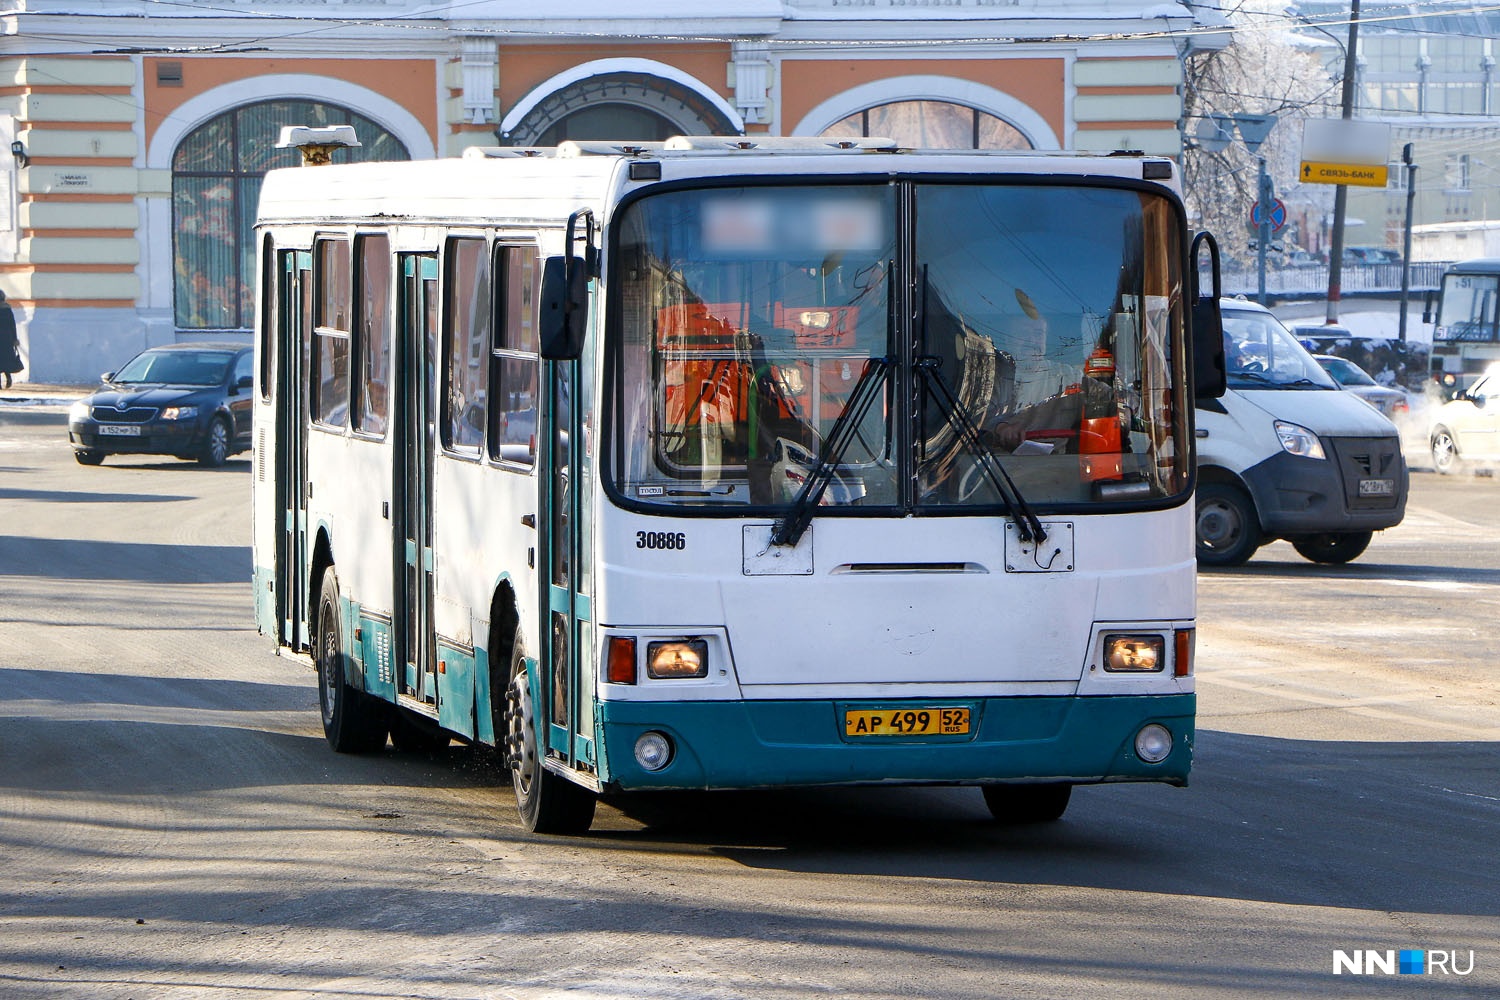 Нижний Новгород закупит 150 новых
автобусов